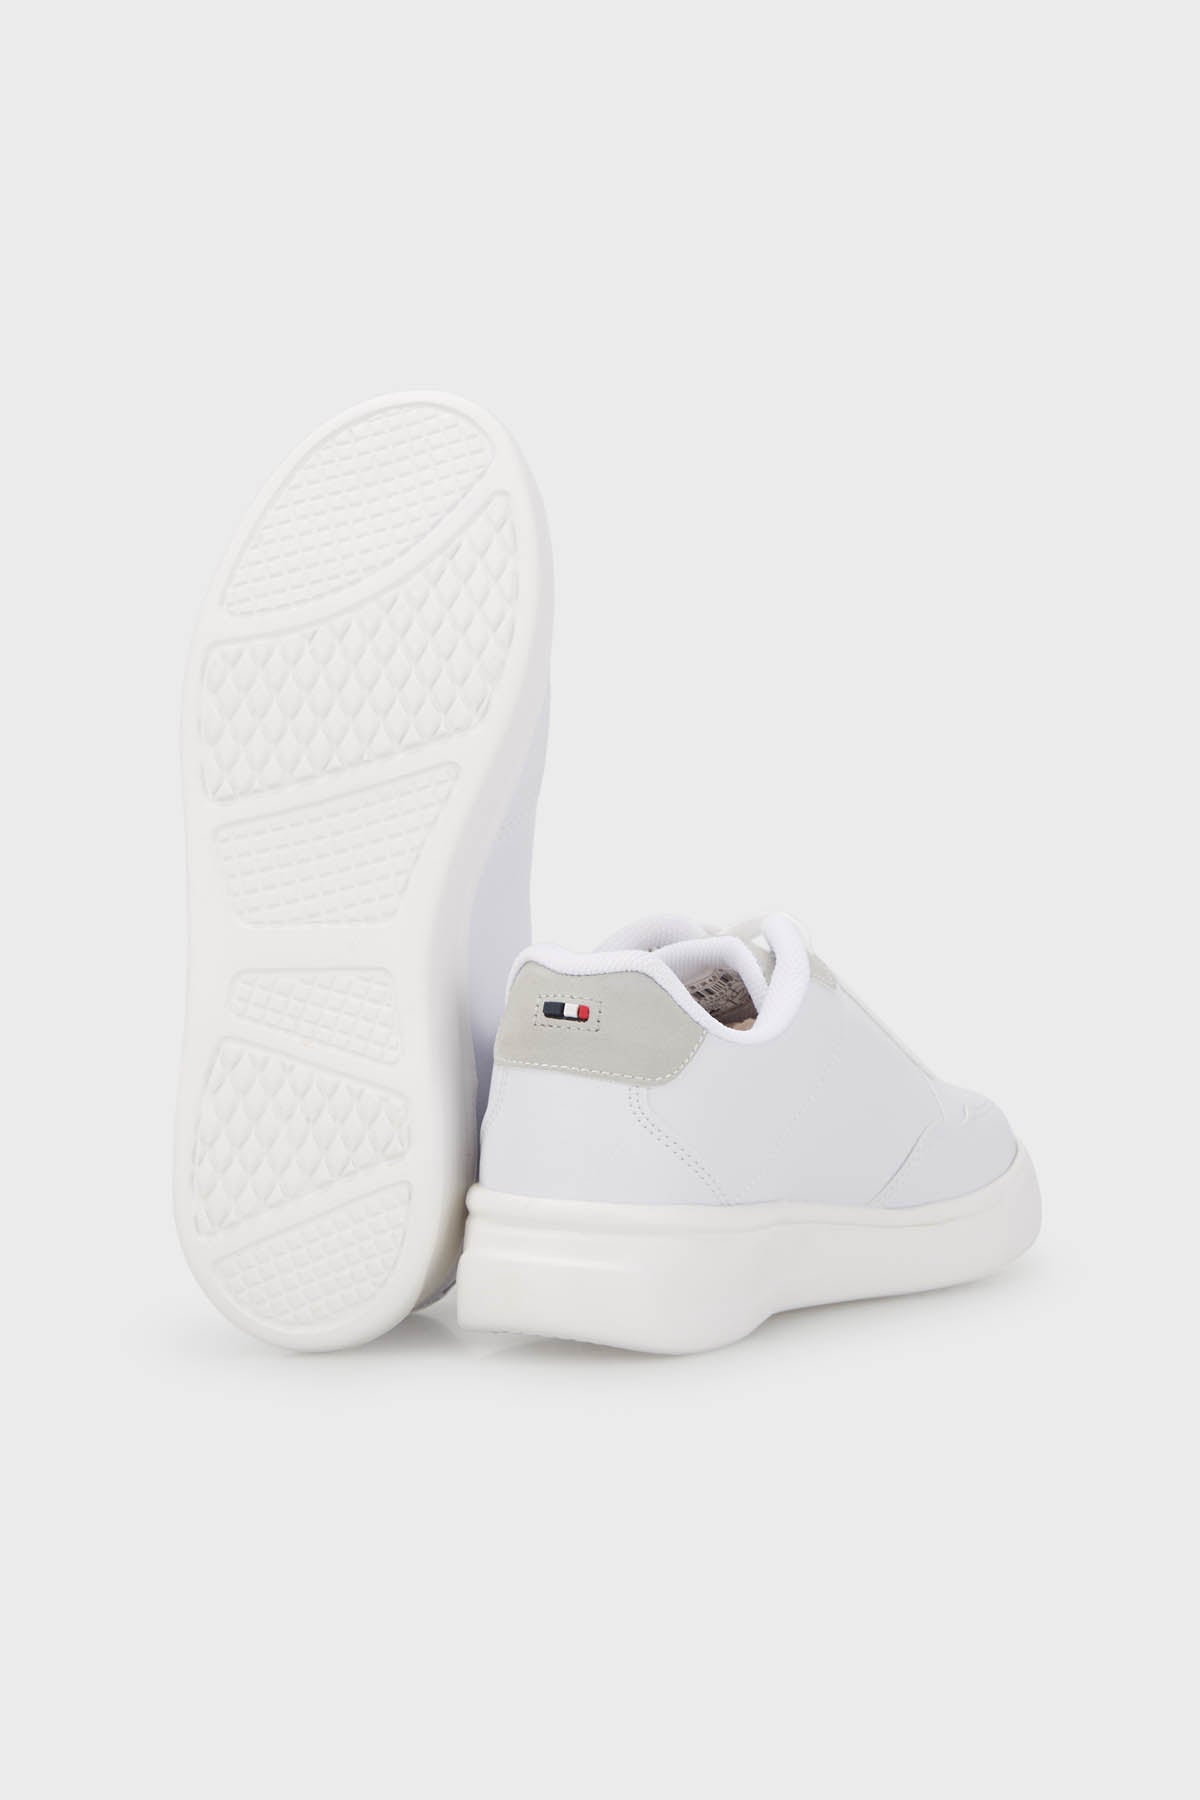 U.S. Polo Assn Sneaker Bayan Ayakkabı ELTA 3FX BEYAZ